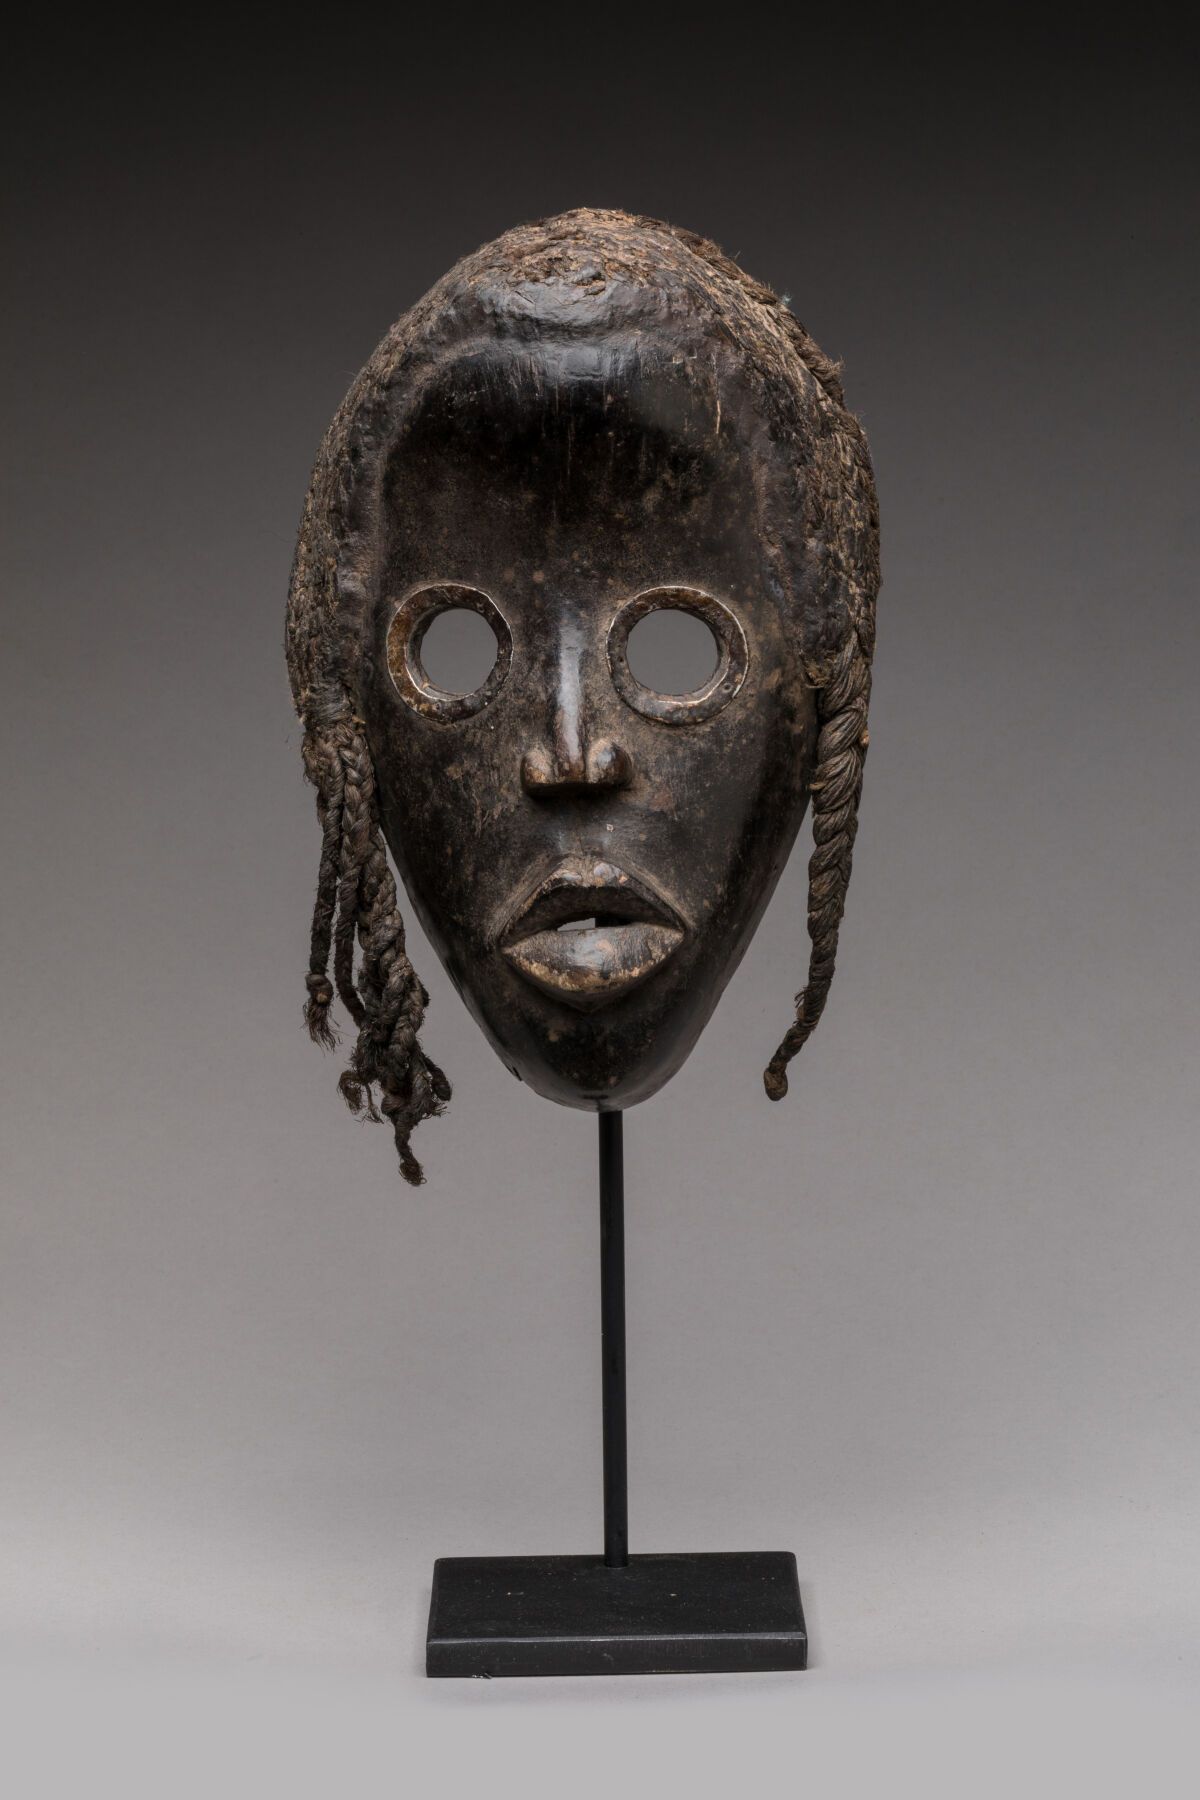 Null DAN，象牙海岸。
木头，黑色铜锈。
面具上有一张椭圆形的女性面孔，镂空的眼睛有金属环，头饰由植物纤维制成。
高度：24厘米。宽度：15.5厘米。
小&hellip;